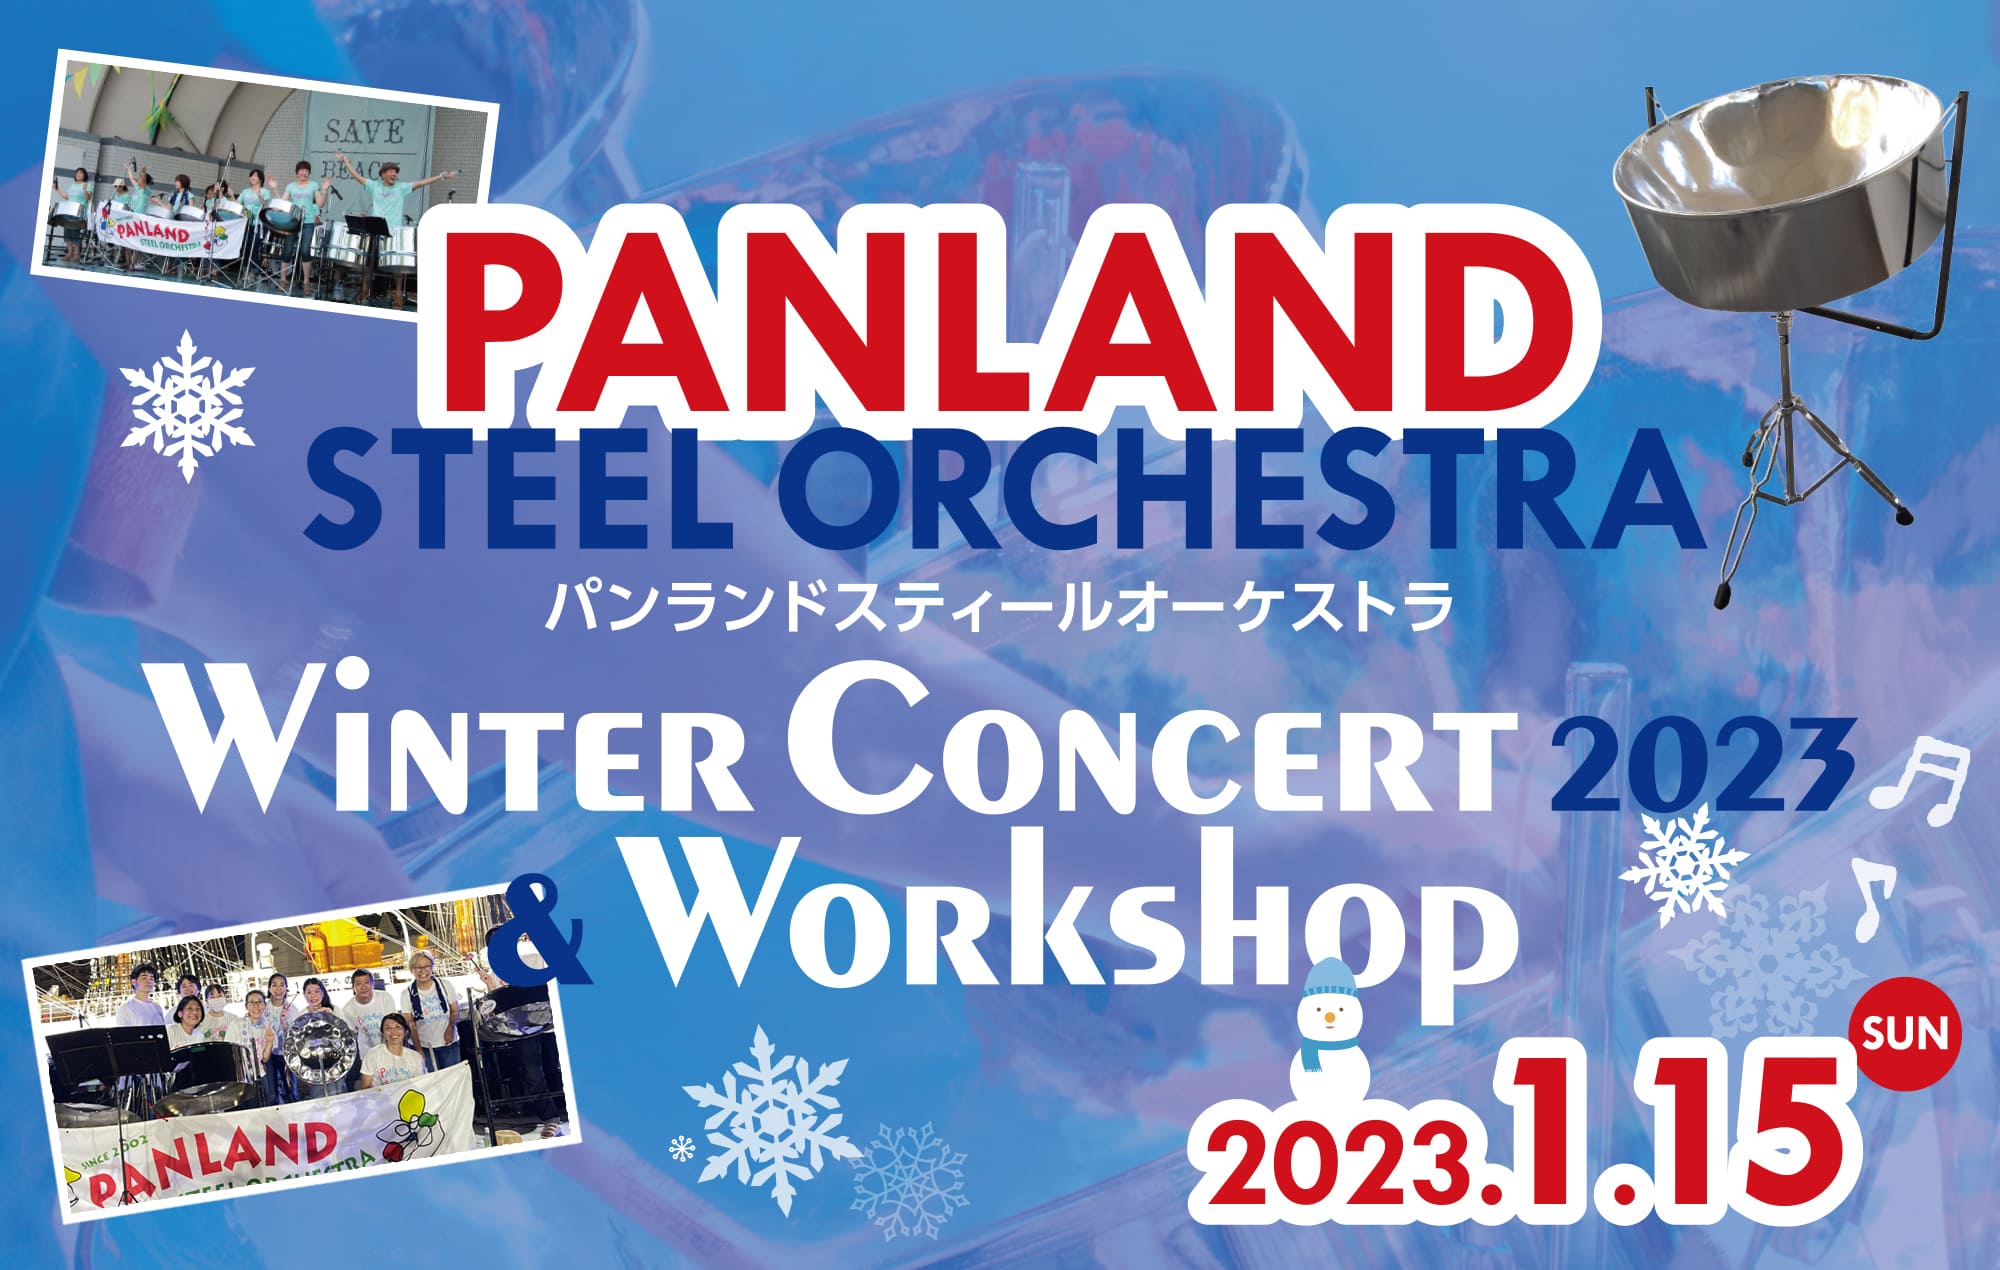 PANLAND Steel Orchestra Winter Concert 2023 & Workshop